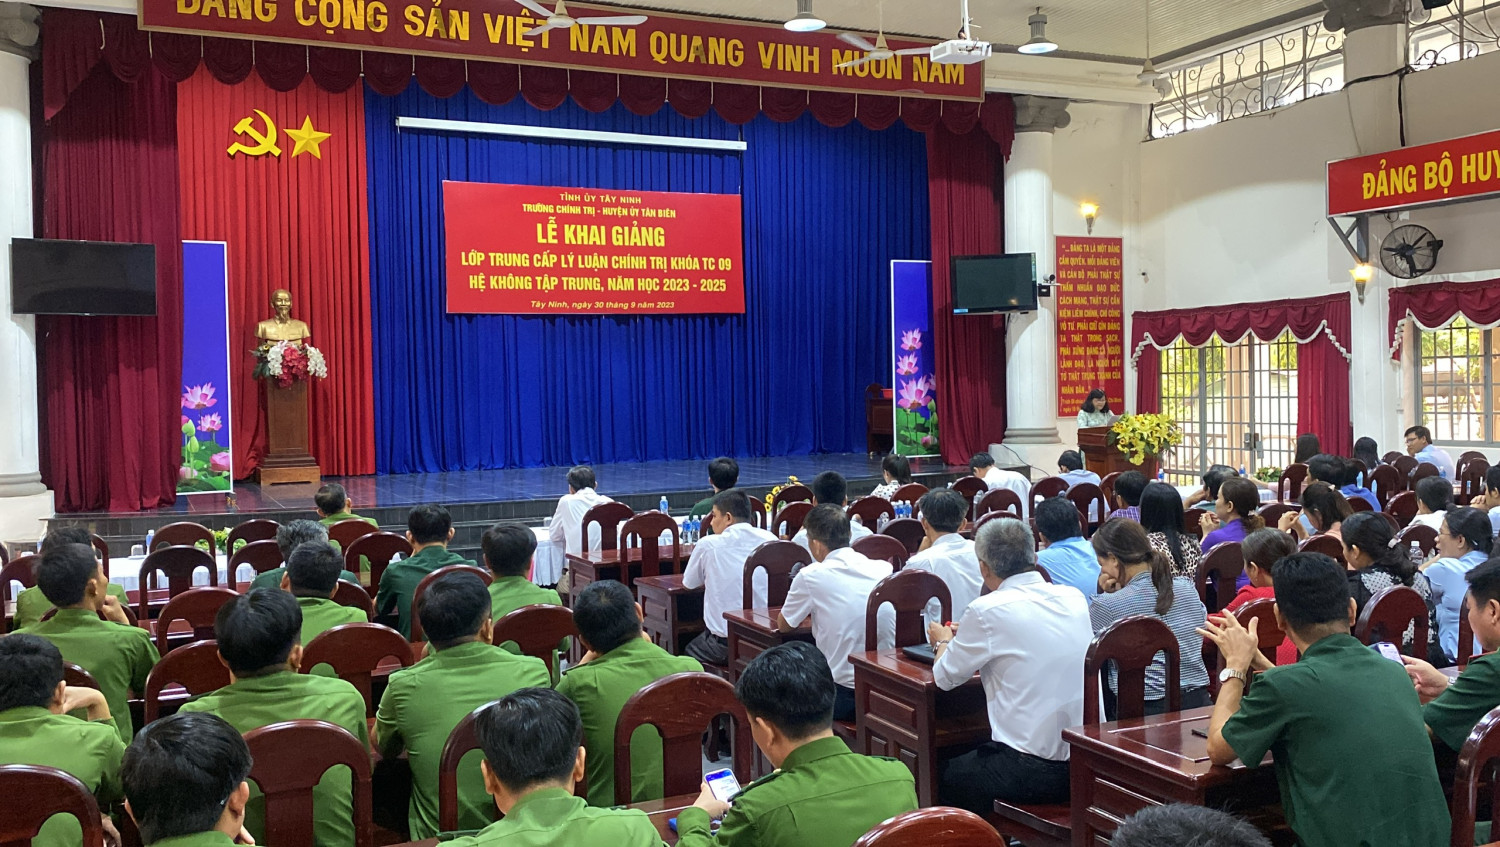 Trường Chính trị tỉnh Khai giảng lớp Trung cấp LLCT hệ không tập trung tại Tân Biên